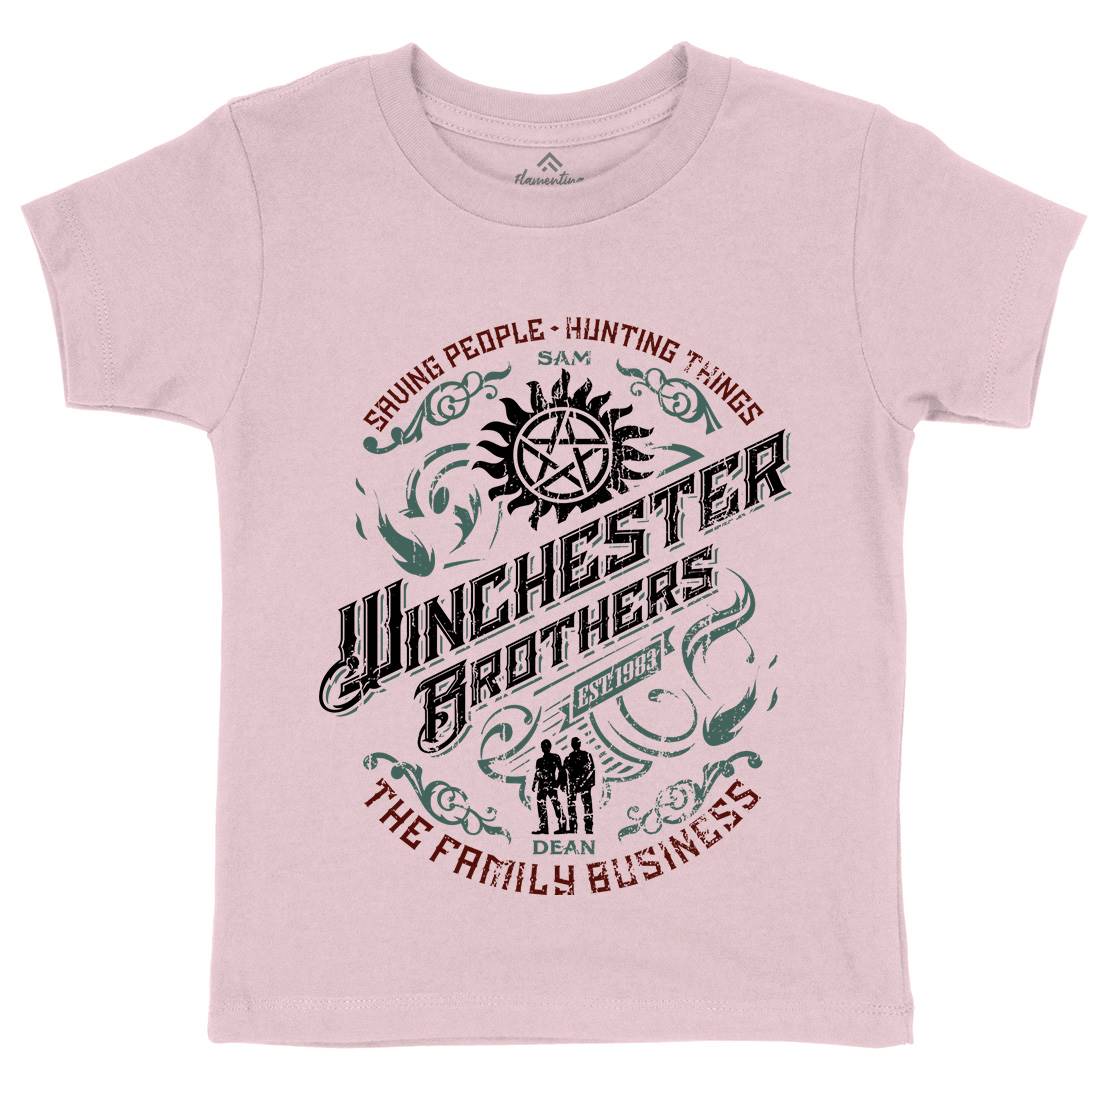 Winchester Kids Crew Neck T-Shirt Horror D330